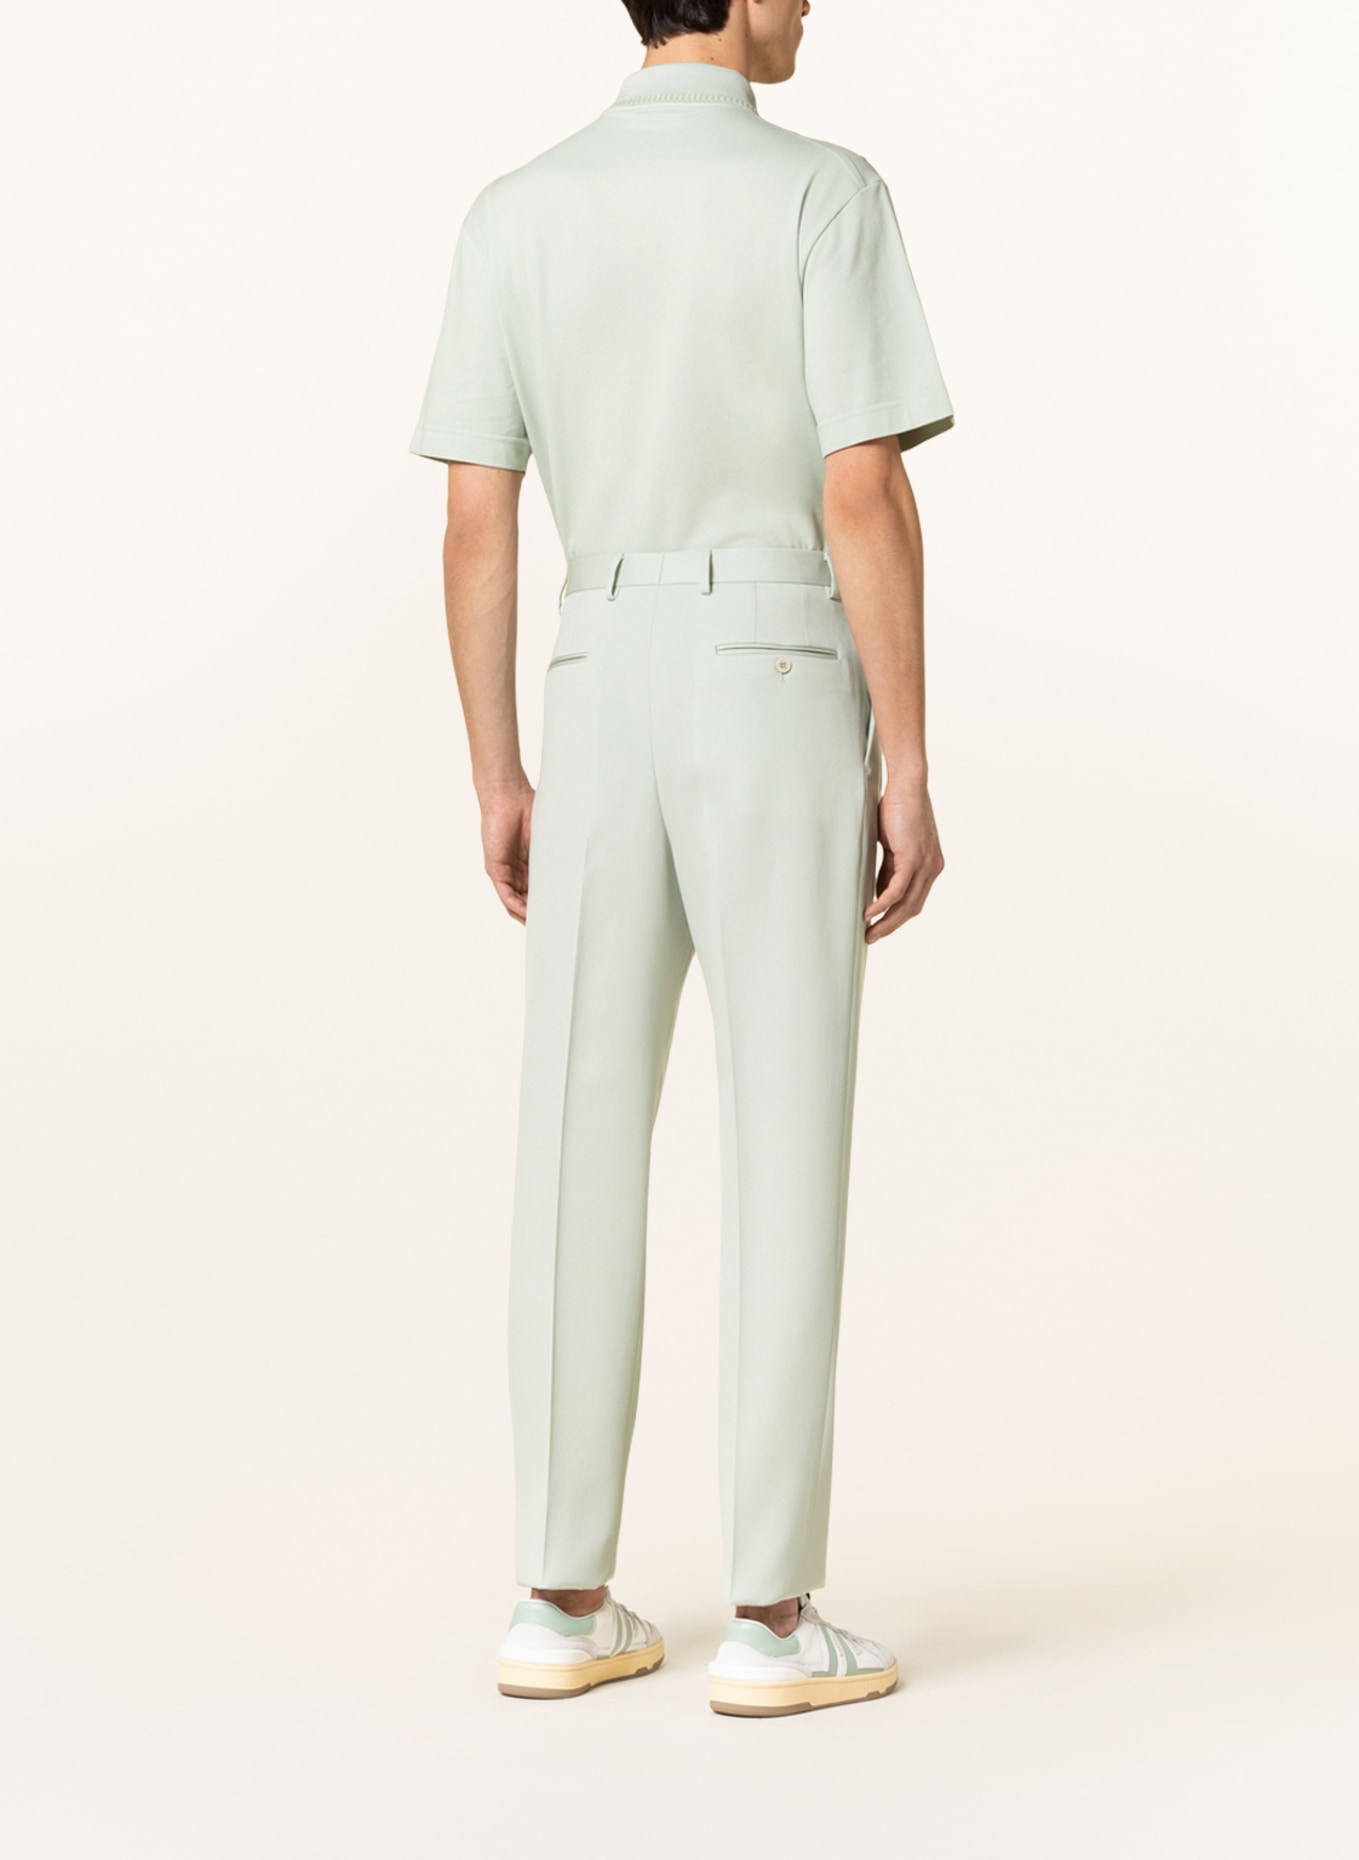 LANVIN Suit trousers regular fit, Color: 401 SAGE (Image 4)